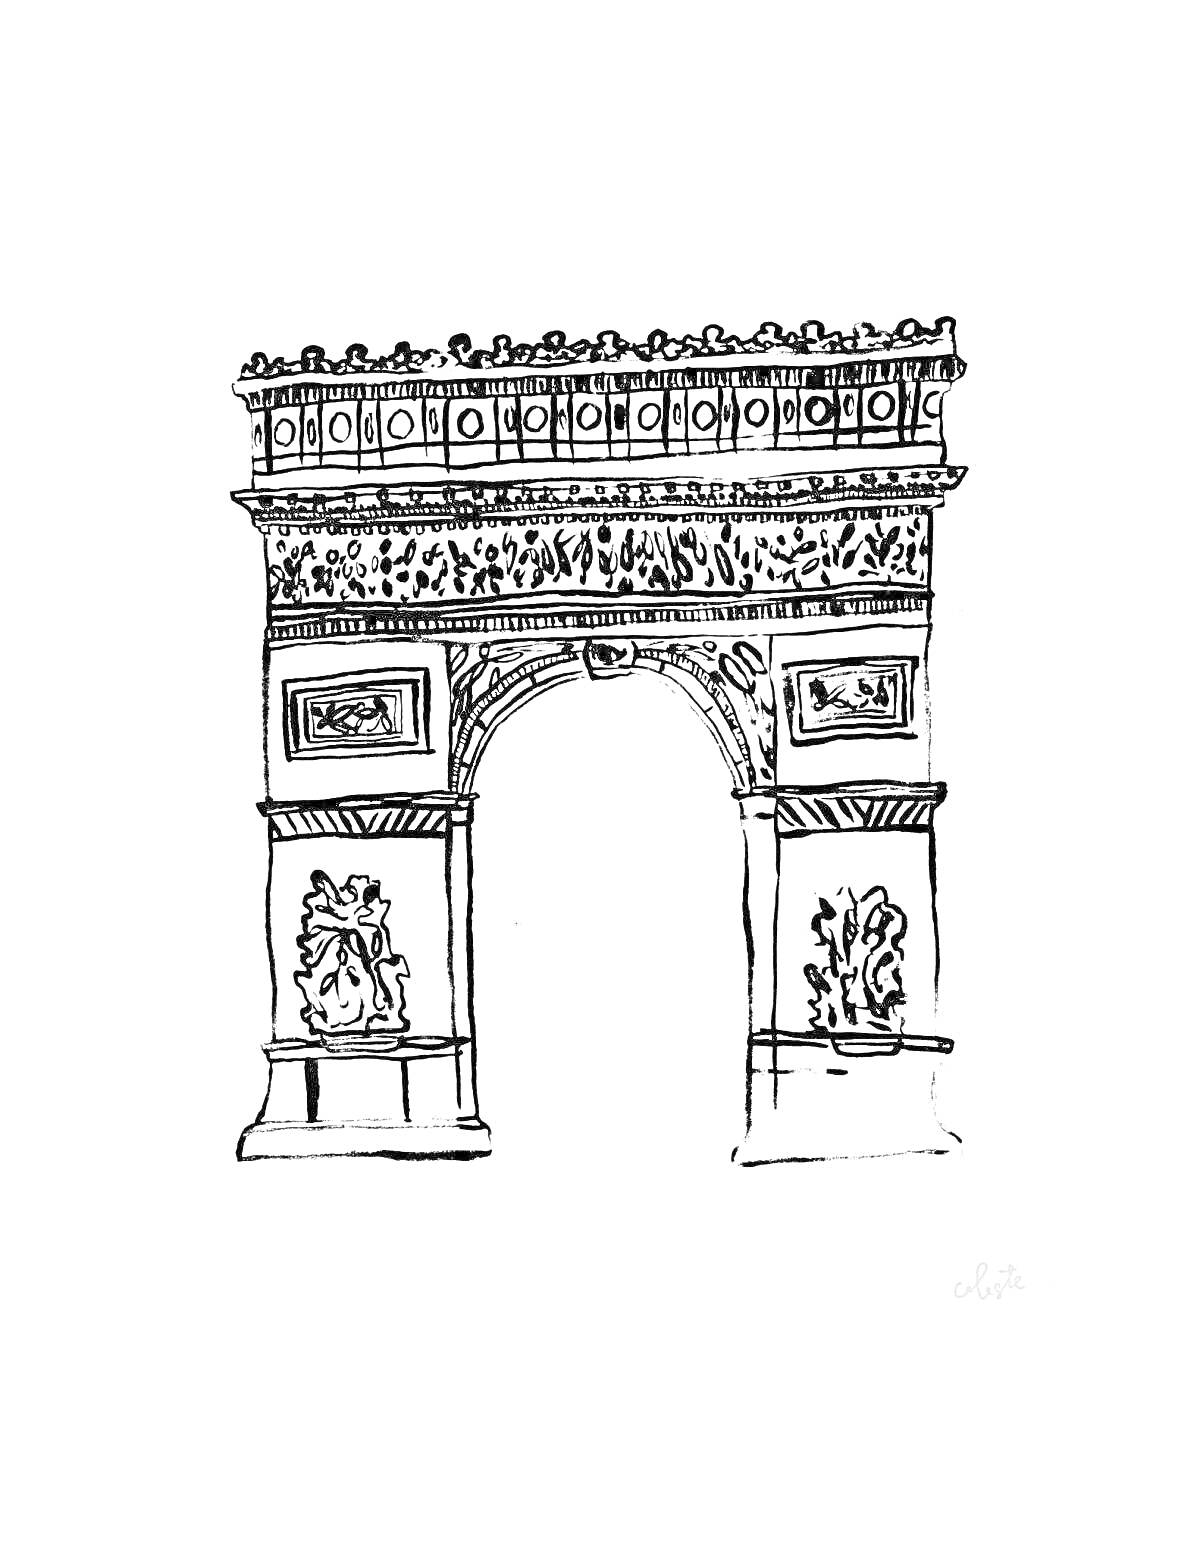 РаскраскаТриумфальная арка с декоративными барельефами и орнаментом